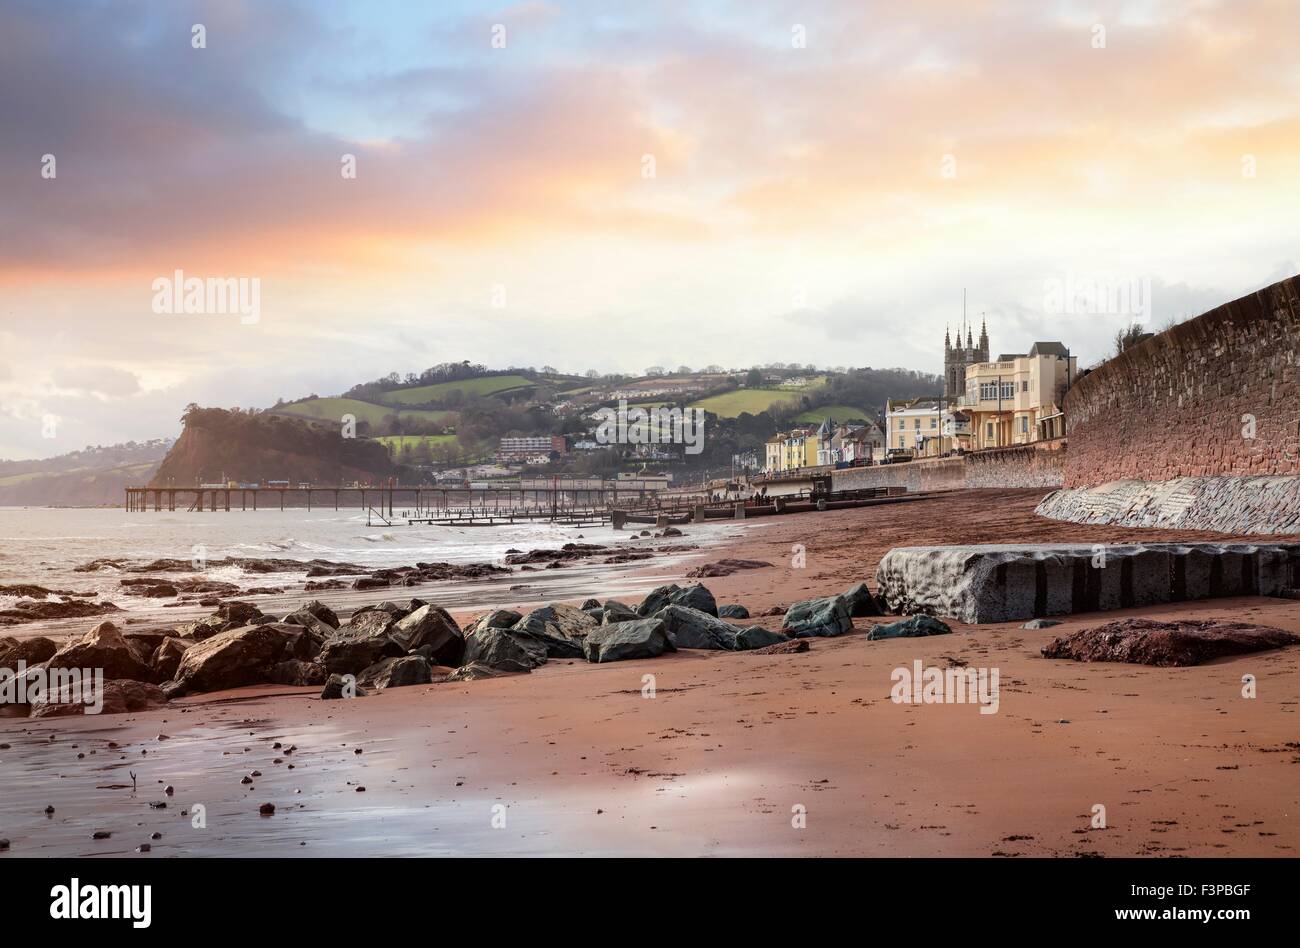 The beach at Teignmouth, Devon, England. Stock Photo